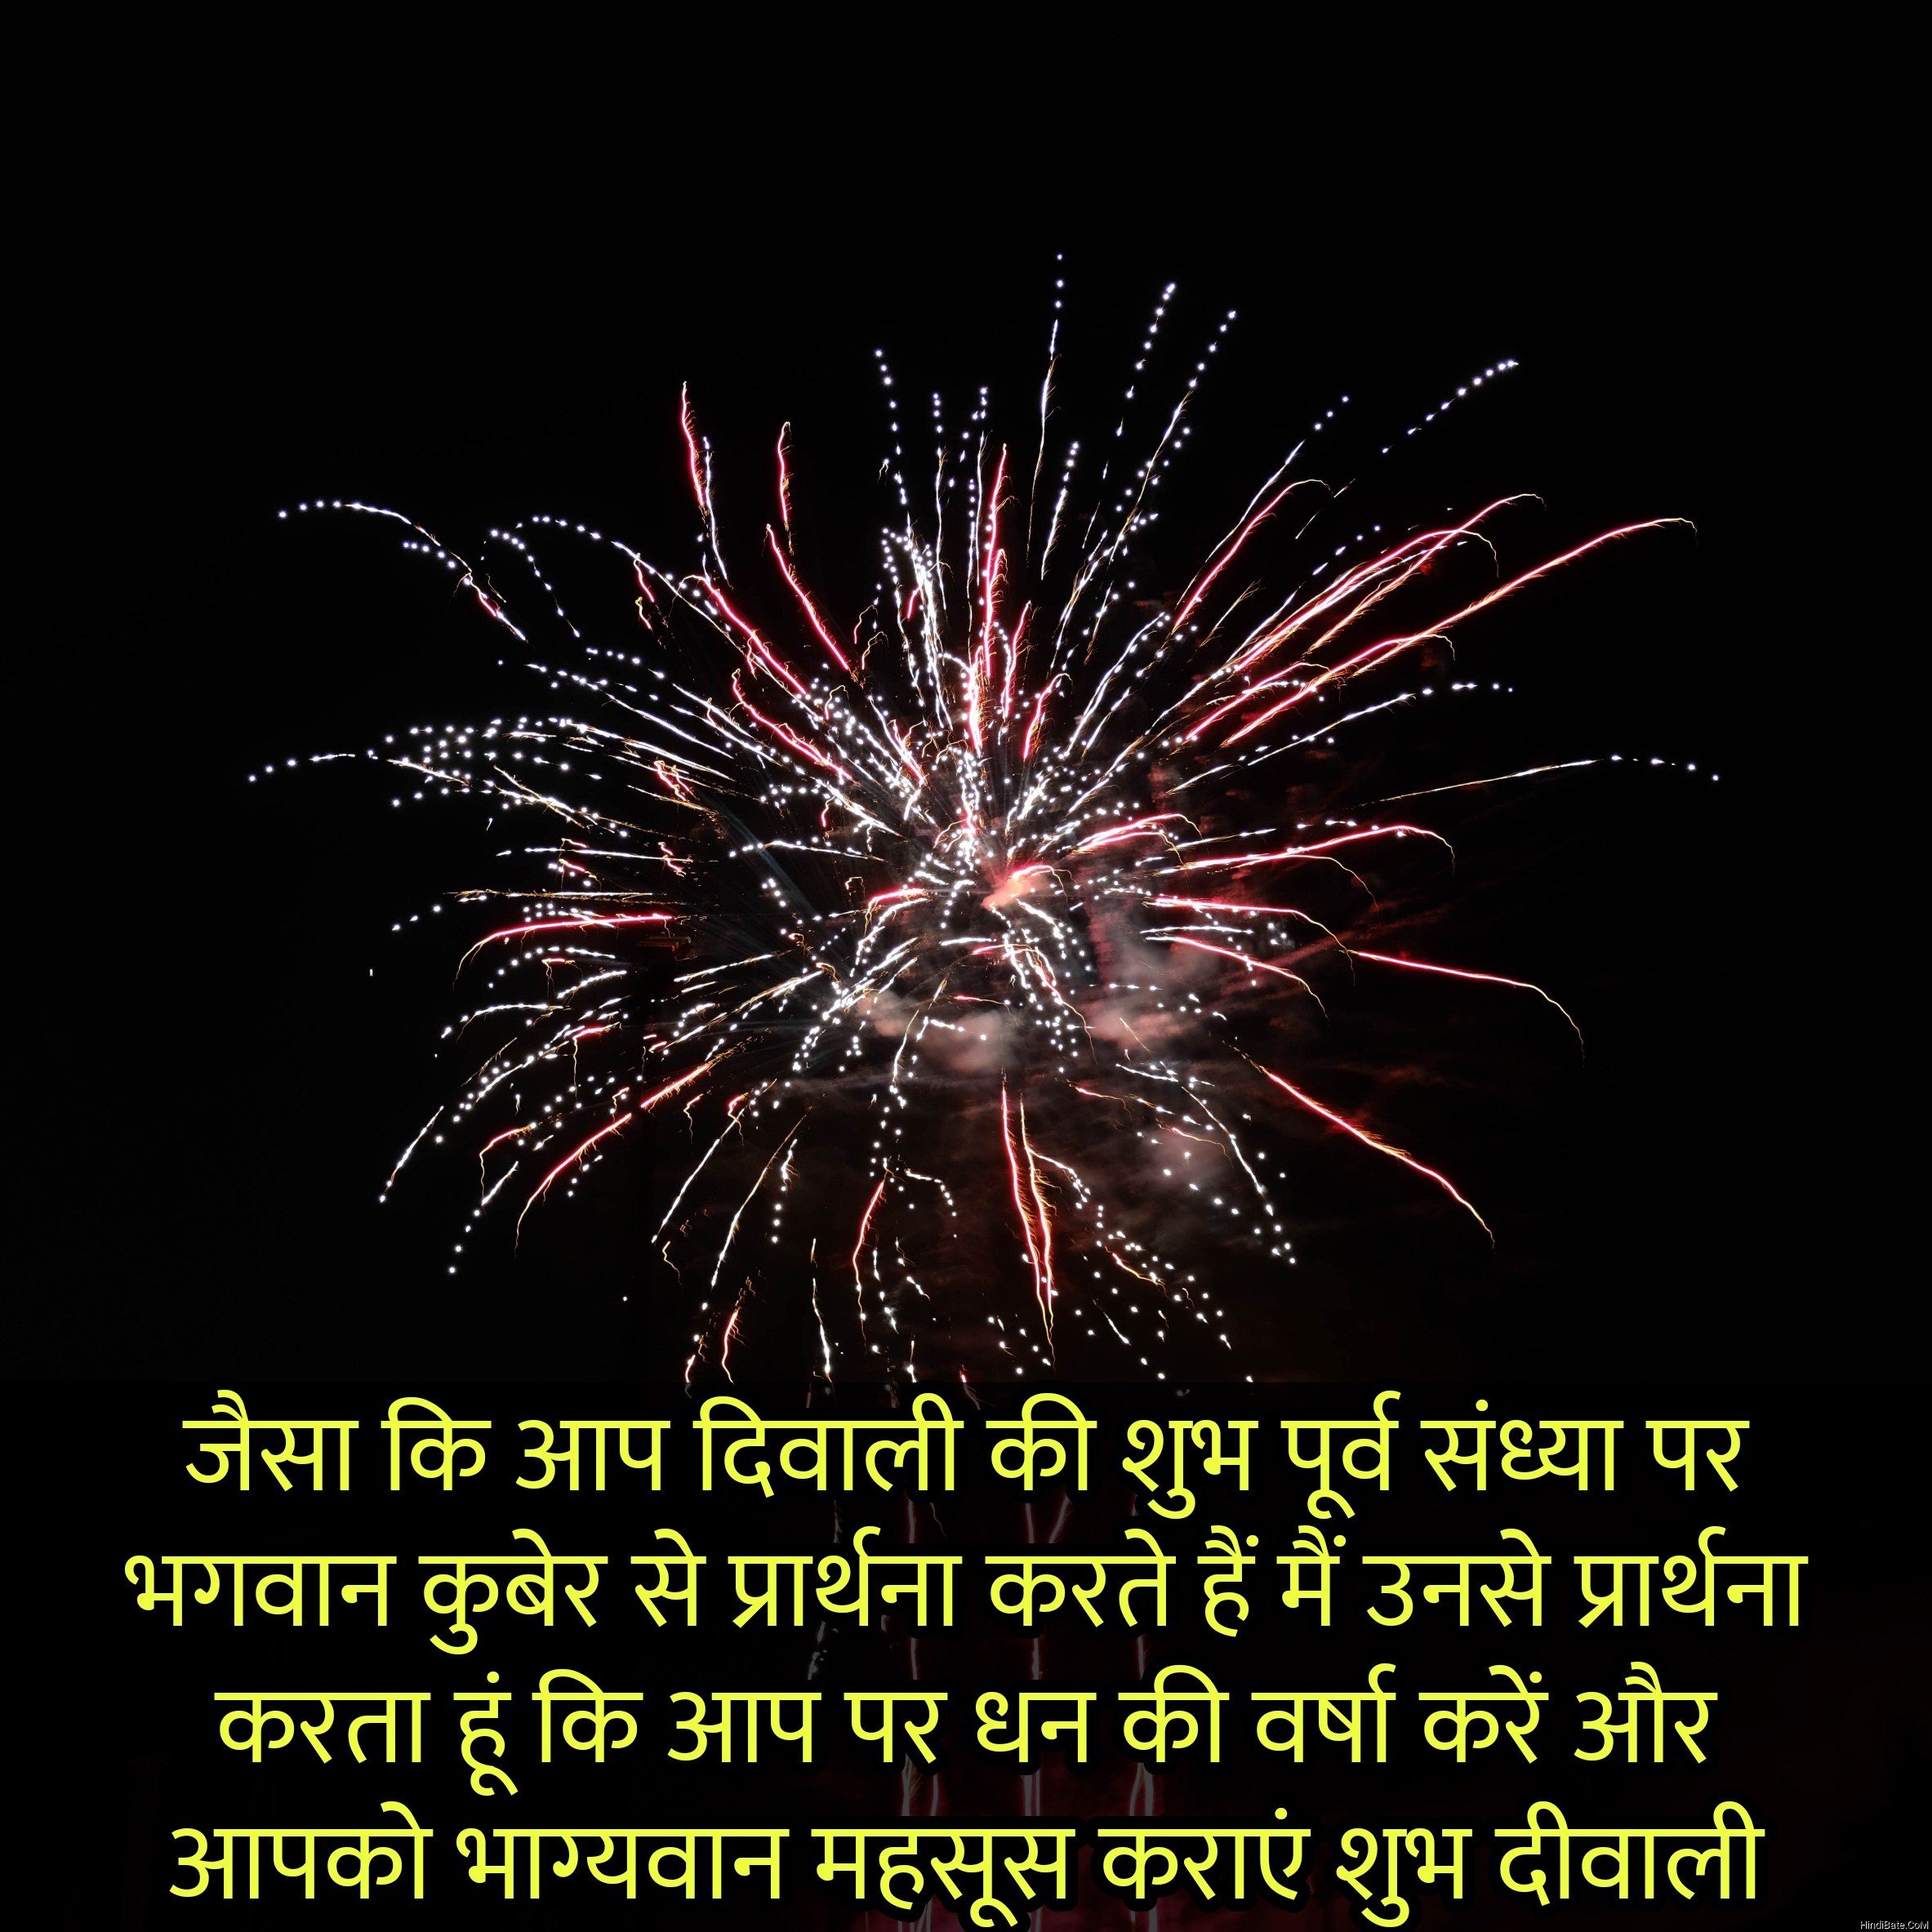 जैसा कि आप दिवाली की शुभ पूर्व संध्या Diwali quotes